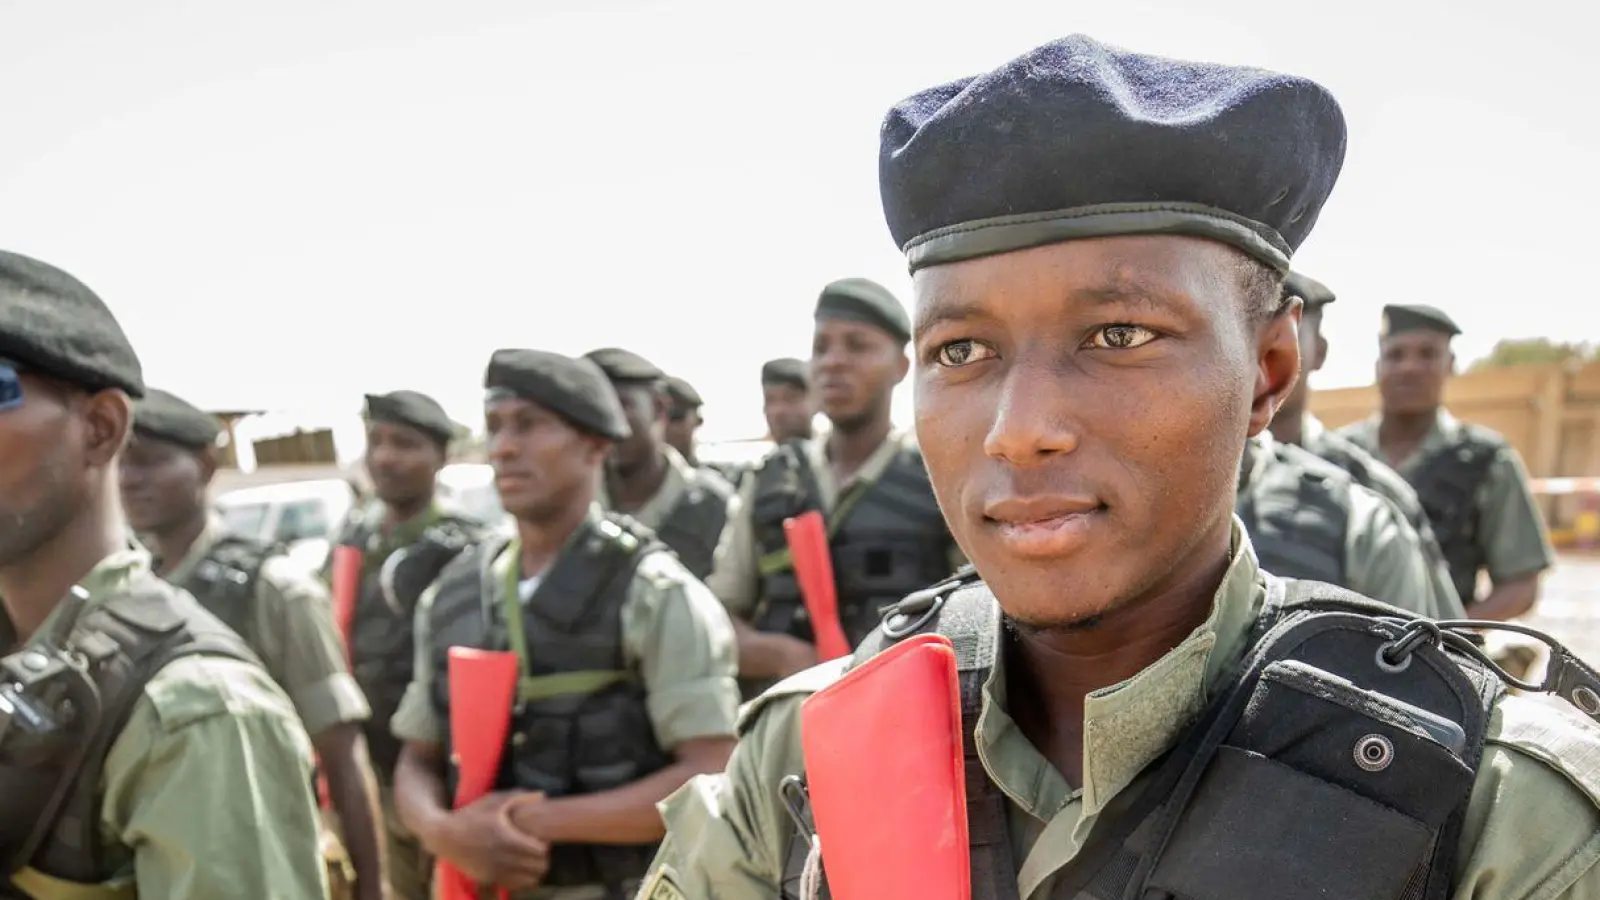 Auszubildende Polizisten der nigrischen Grenzschutzkompanie stehen bei der zivilen EU-Unterstützungsmission EUCAP Sahel Niger. (Foto: Michael Kappeler/dpa)